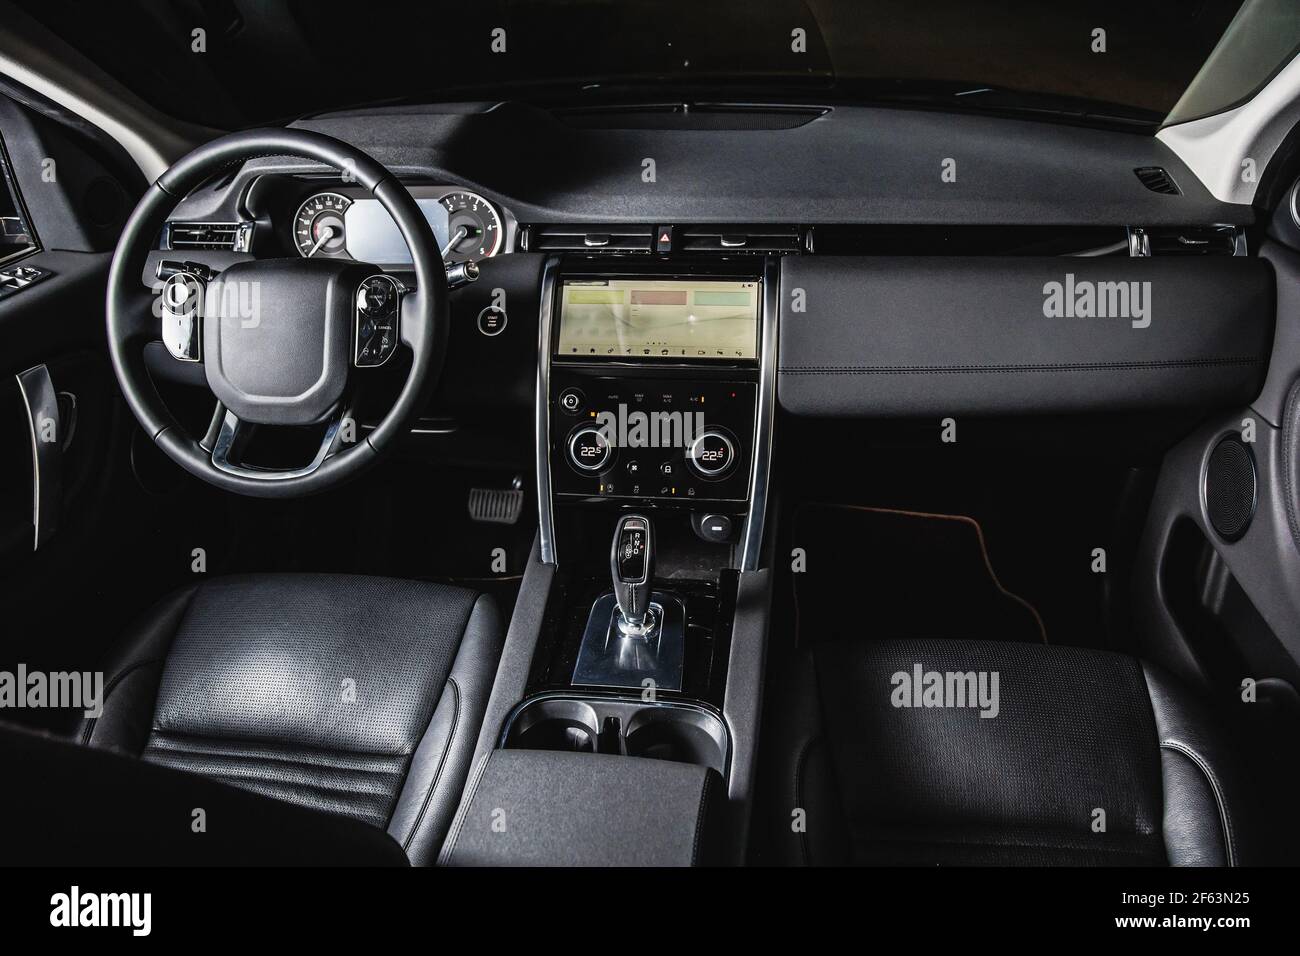 Luxus-Auto im Inneren, Automatik-Getriebe-Stick eines modernen Autos.  Innenausstattung aus dunklem Leder Stockfotografie - Alamy